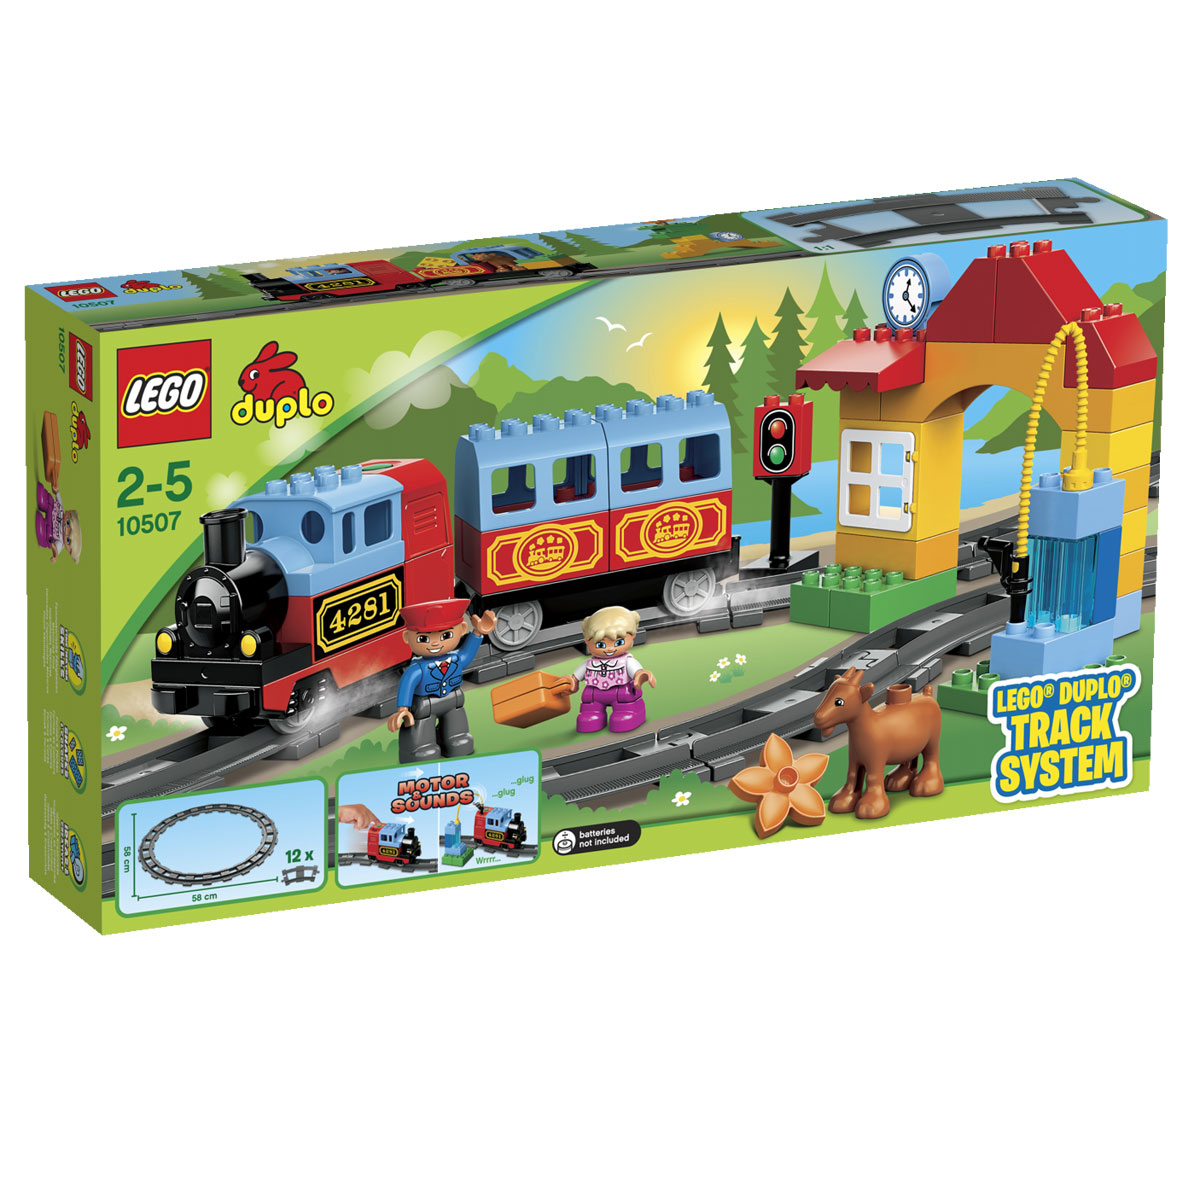 Нажмите на эту кнопку чтобы перейти к покупке LEGO: Мой первый поезд 10507 с доставкой.